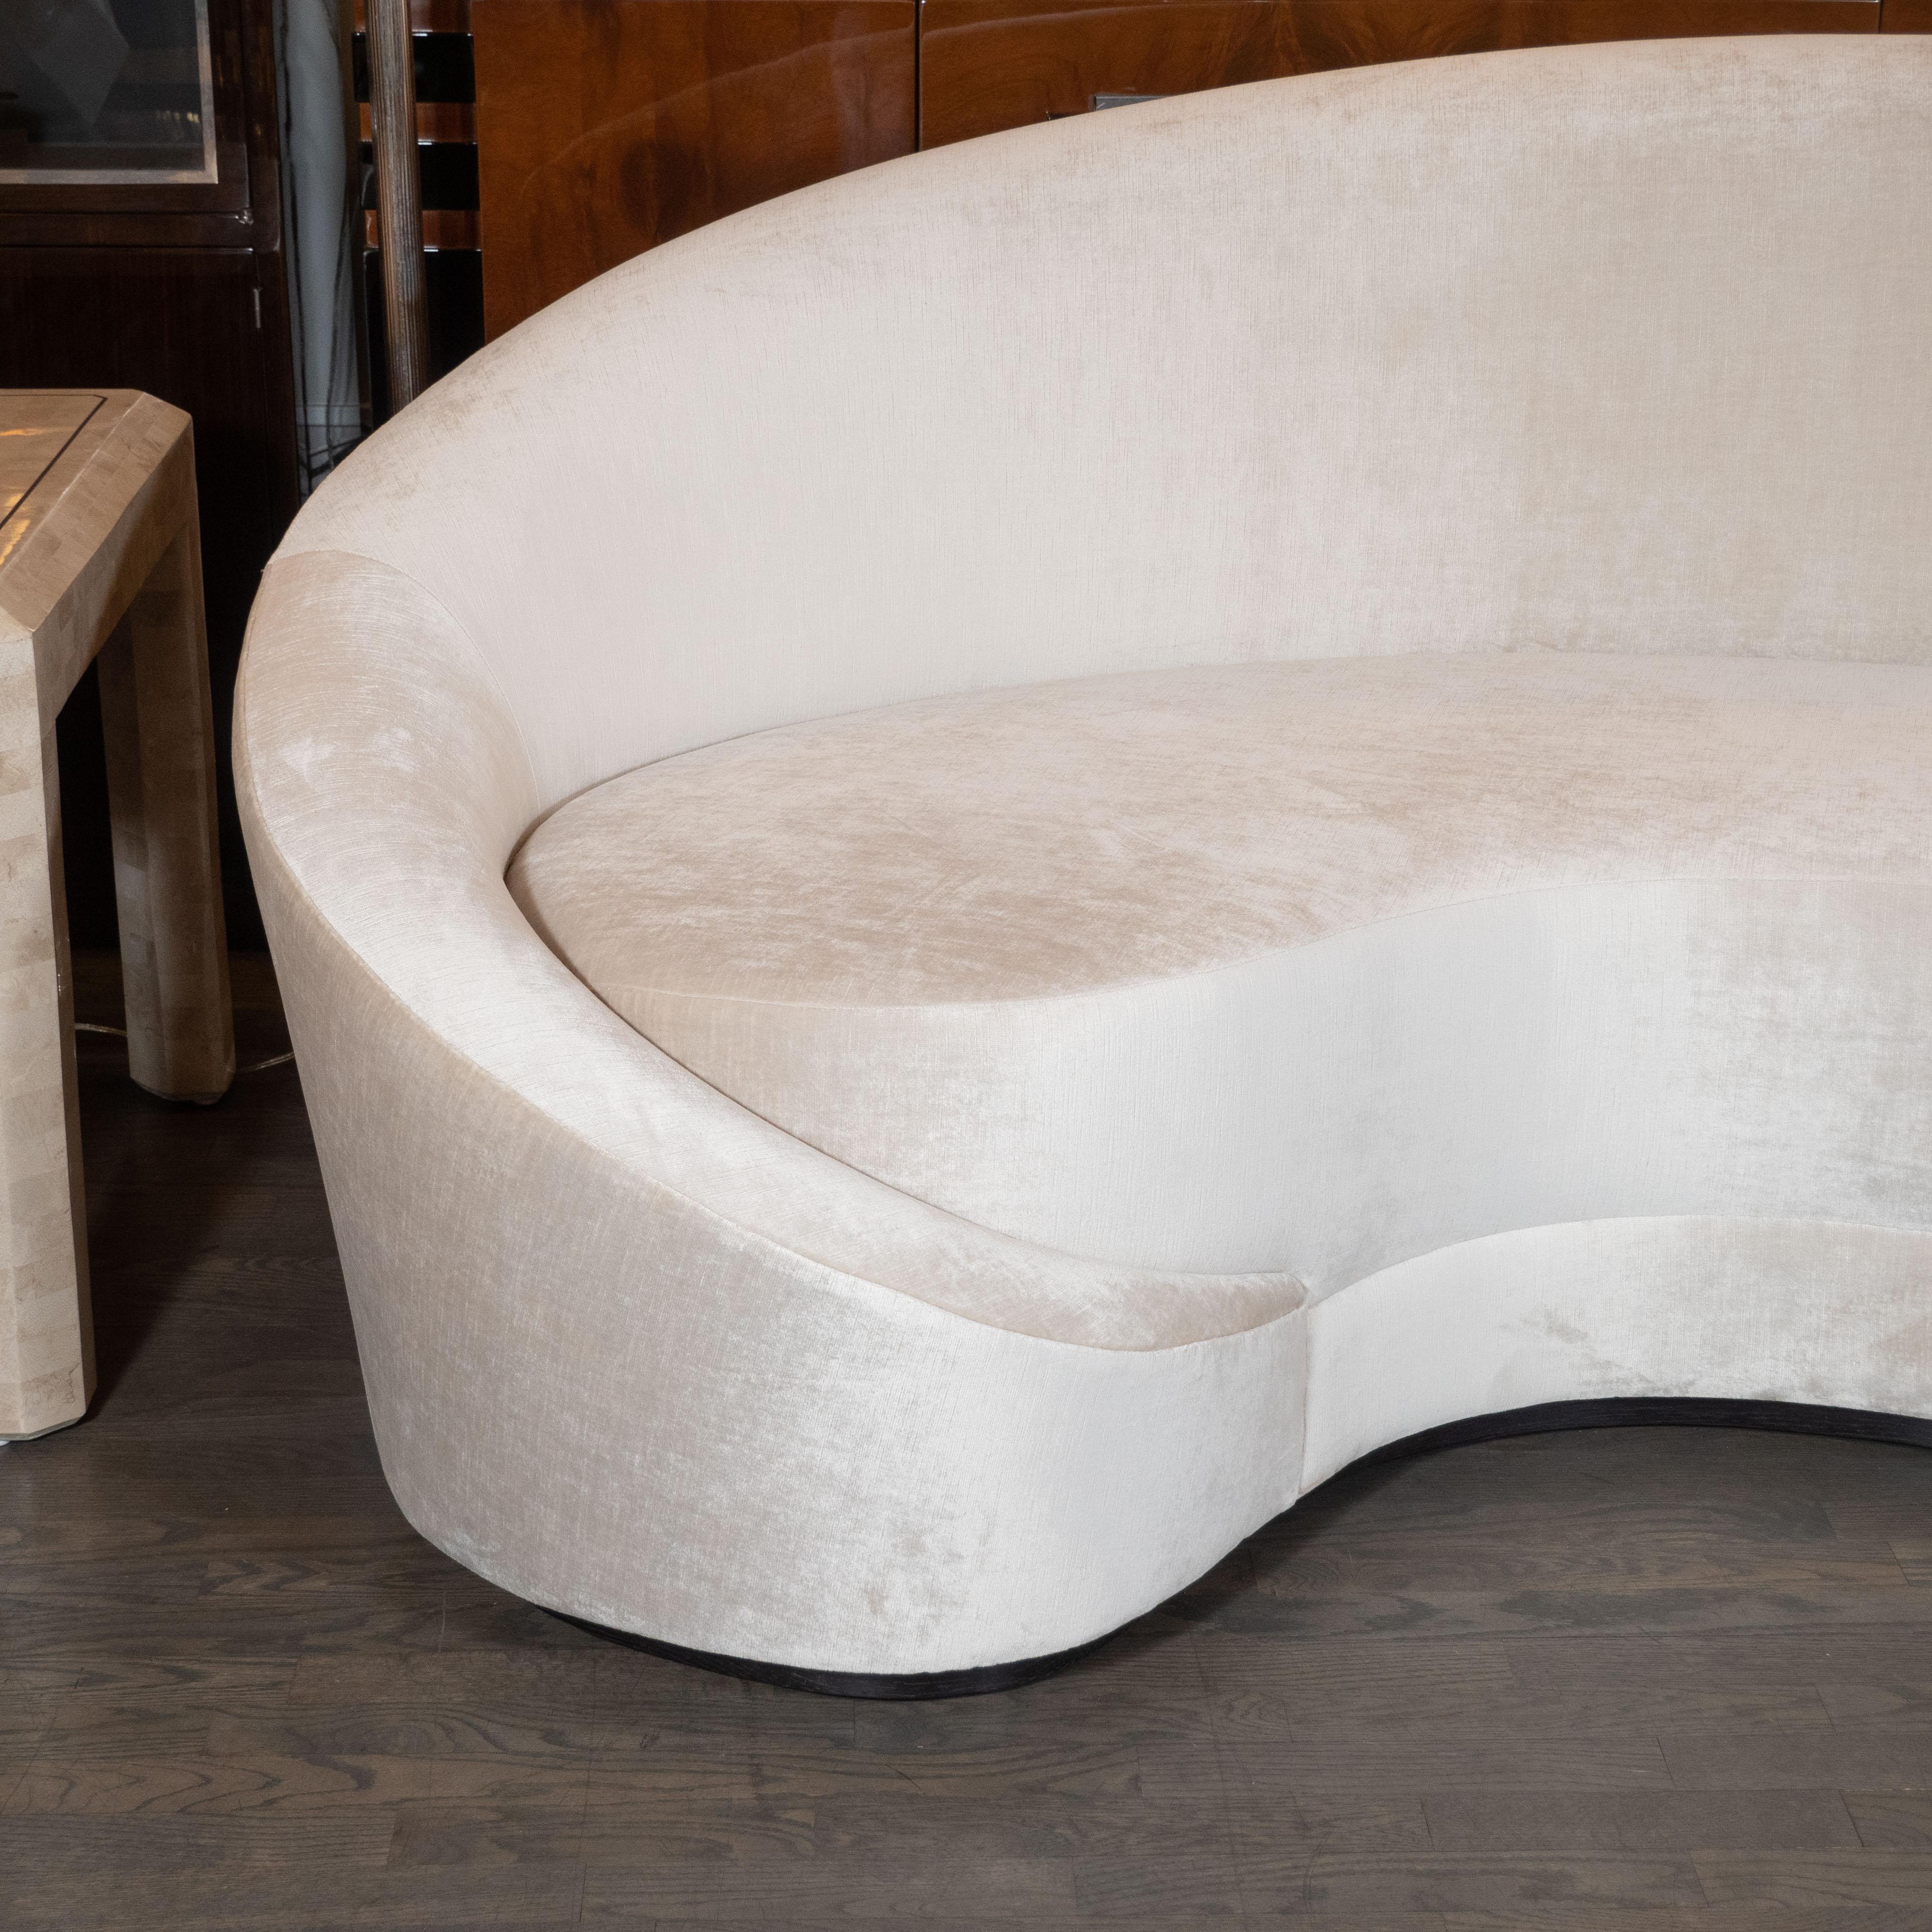 Dieses atemberaubende modernistische Sofa wurde von Kunsthandwerkern im Staat New York von High Style Deco nach einem Entwurf aus den 1940er Jahren handgefertigt. Er zeichnet sich durch elegante Proportionen und geschwungene, dramatische Kurven aus.